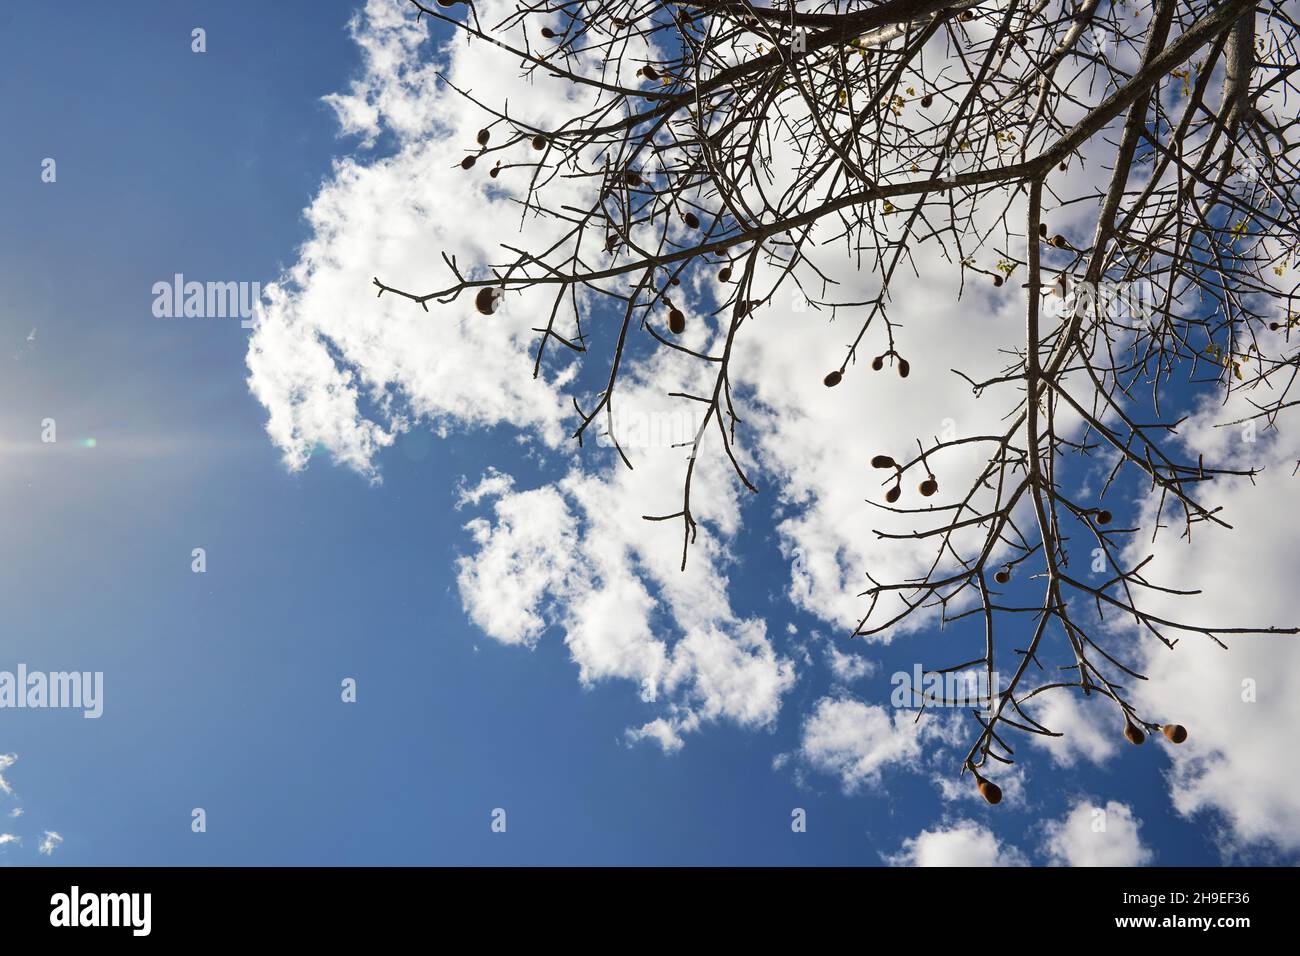 En regardant l'arbre de baobab, seulement quelques feuilles, mais des fruits sur les branches, contre le ciel bleu avec des nuages Banque D'Images